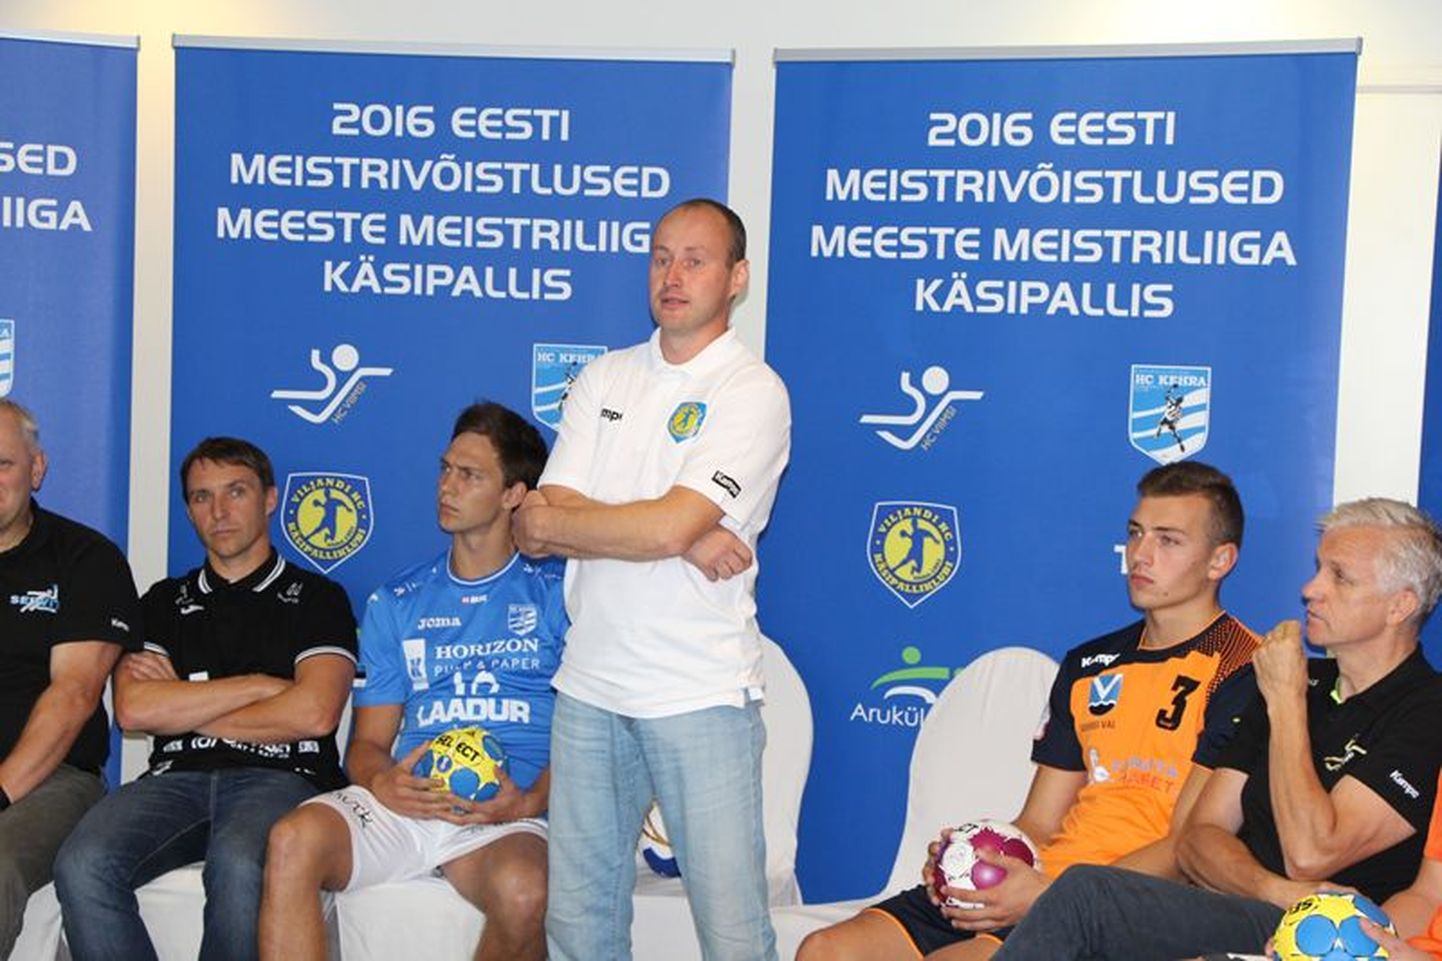 Esmaspäevla tutvustasid Tallinnas käsipalli meistriliiga meeskondade juhendajad ja esindajad oma plaane ja eesmärke.